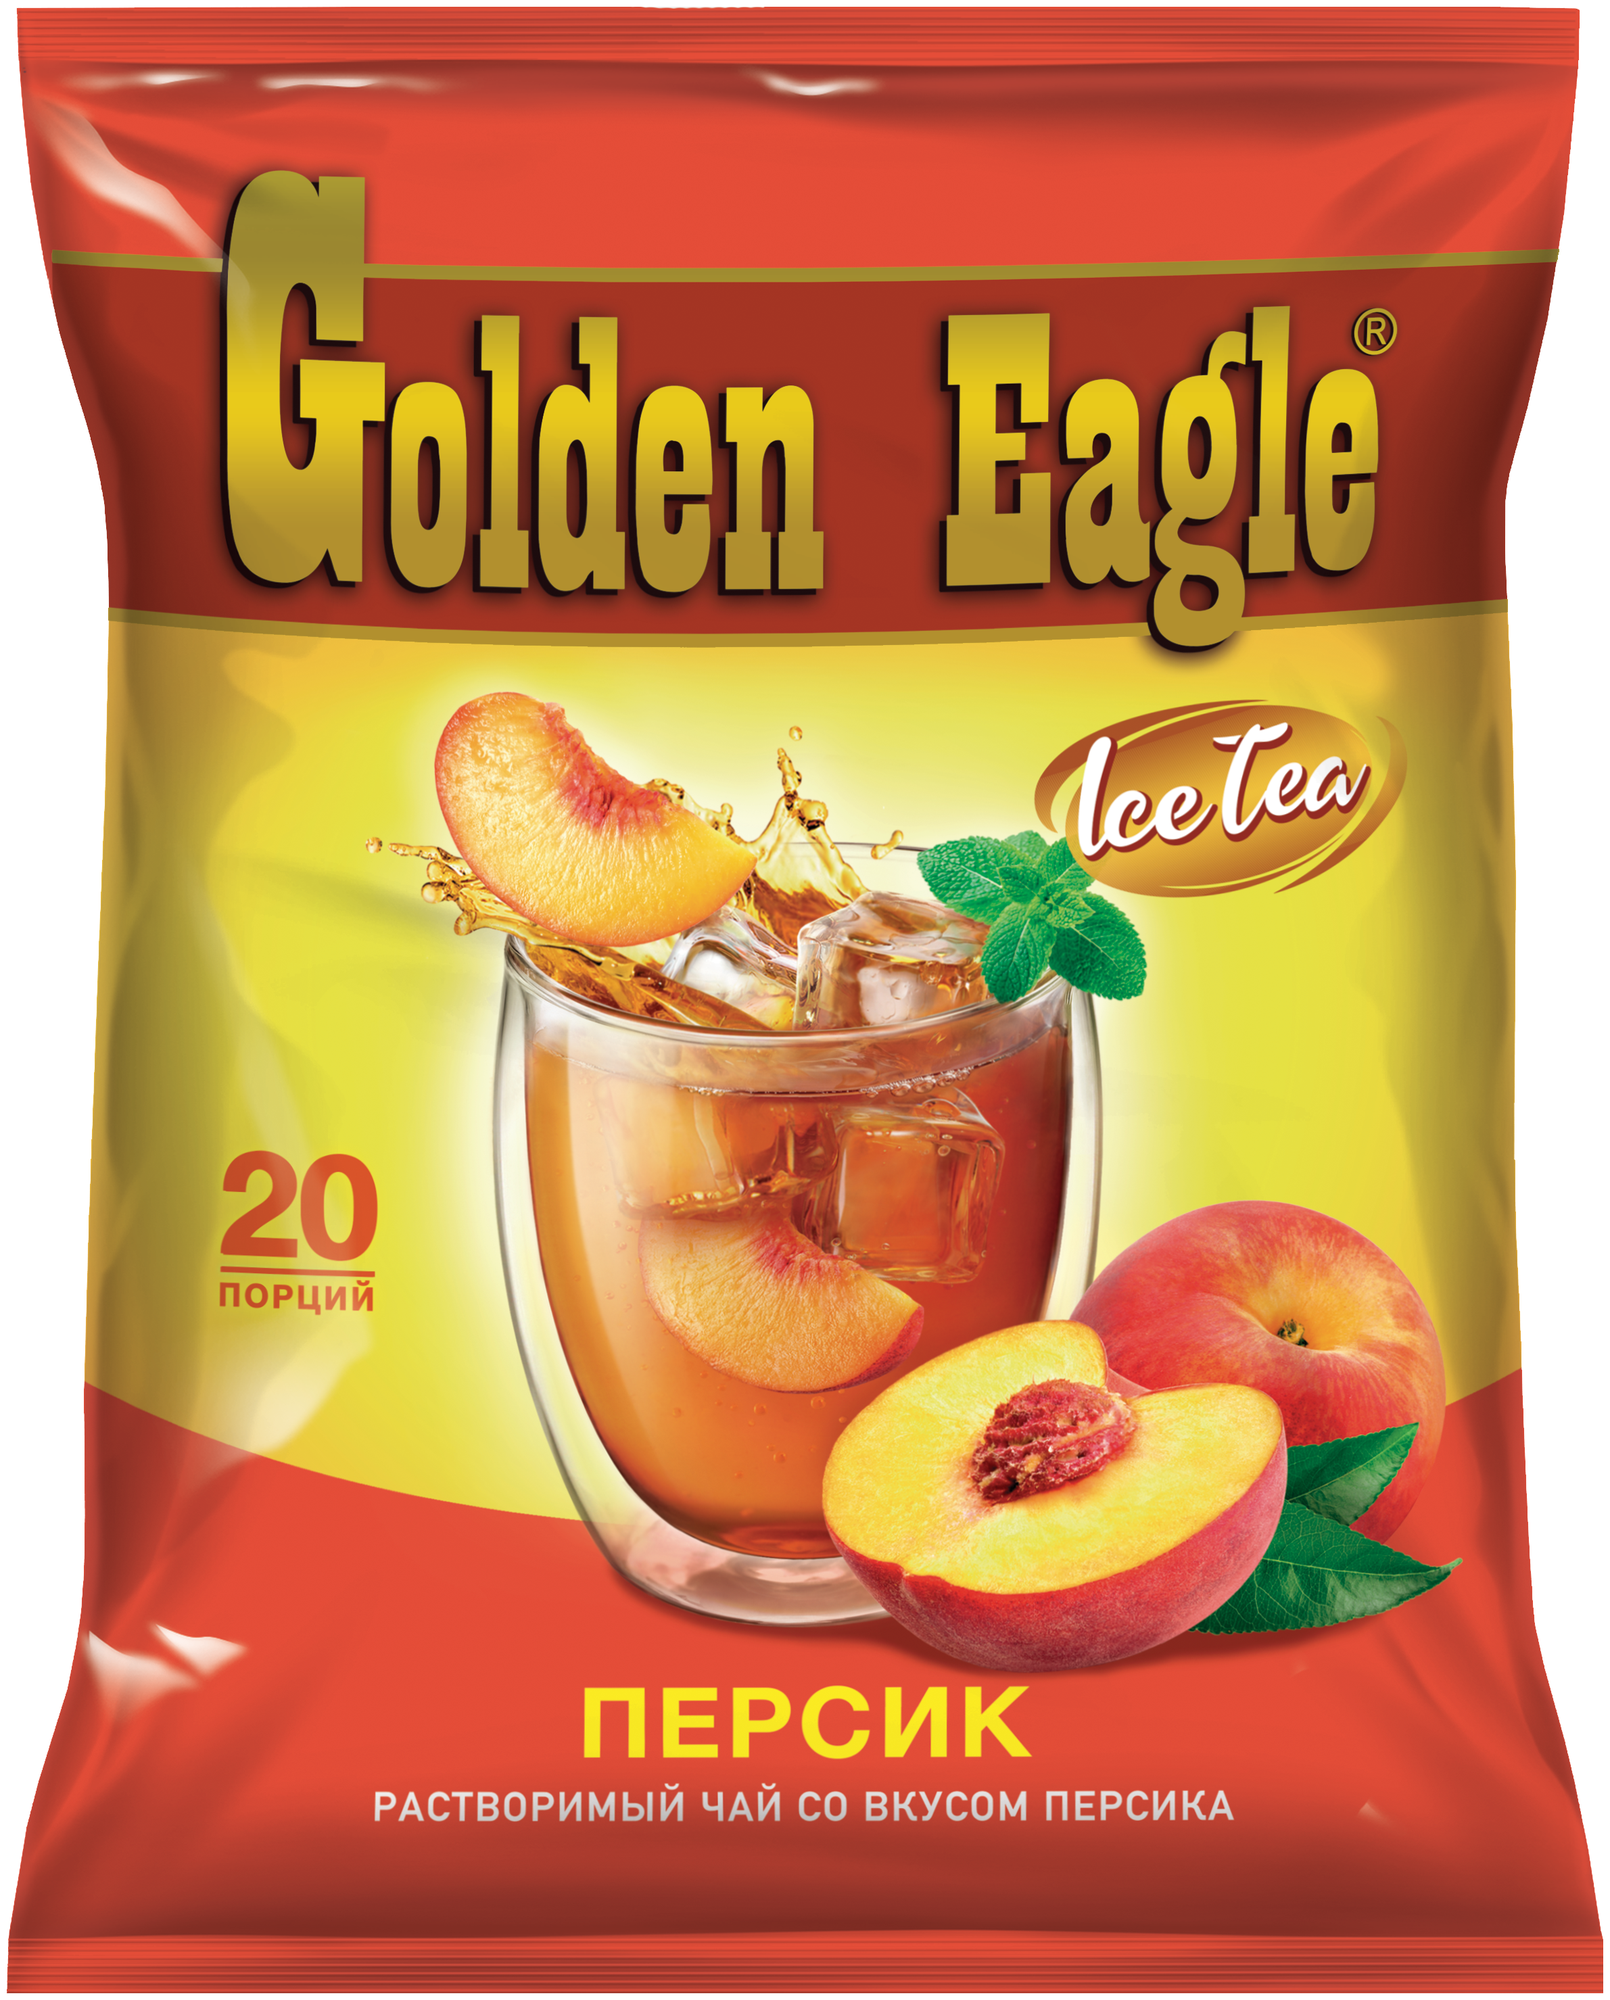 Растворимый чай со вкусом персика «Golden Eagle»